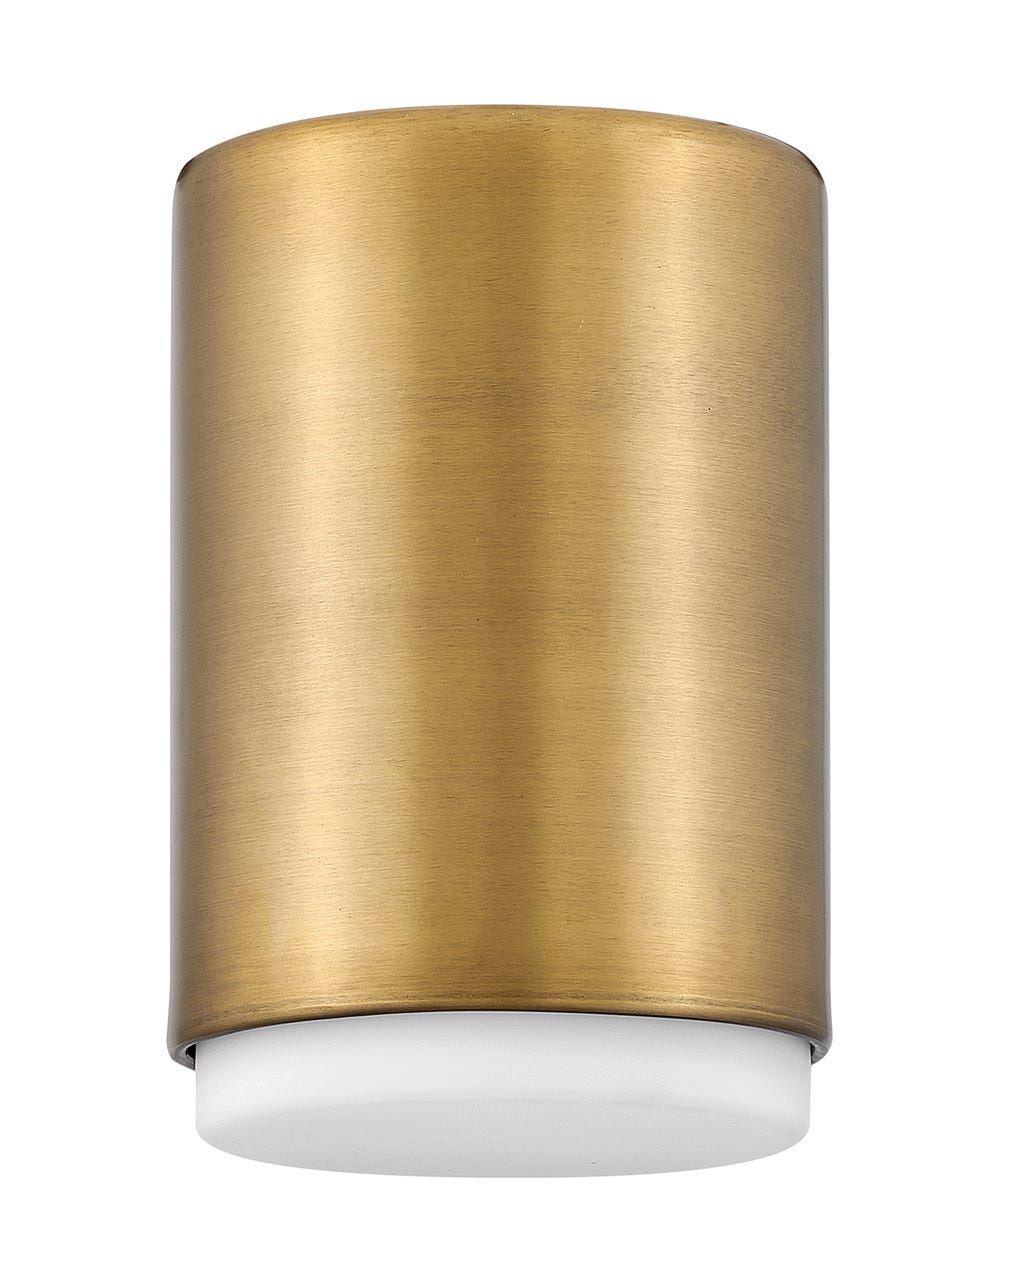 Hinkley Cedric Flush Mount Flush Mount Ceiling Light Hinkley Lacquered Brass 5.25x5.25x7.75 